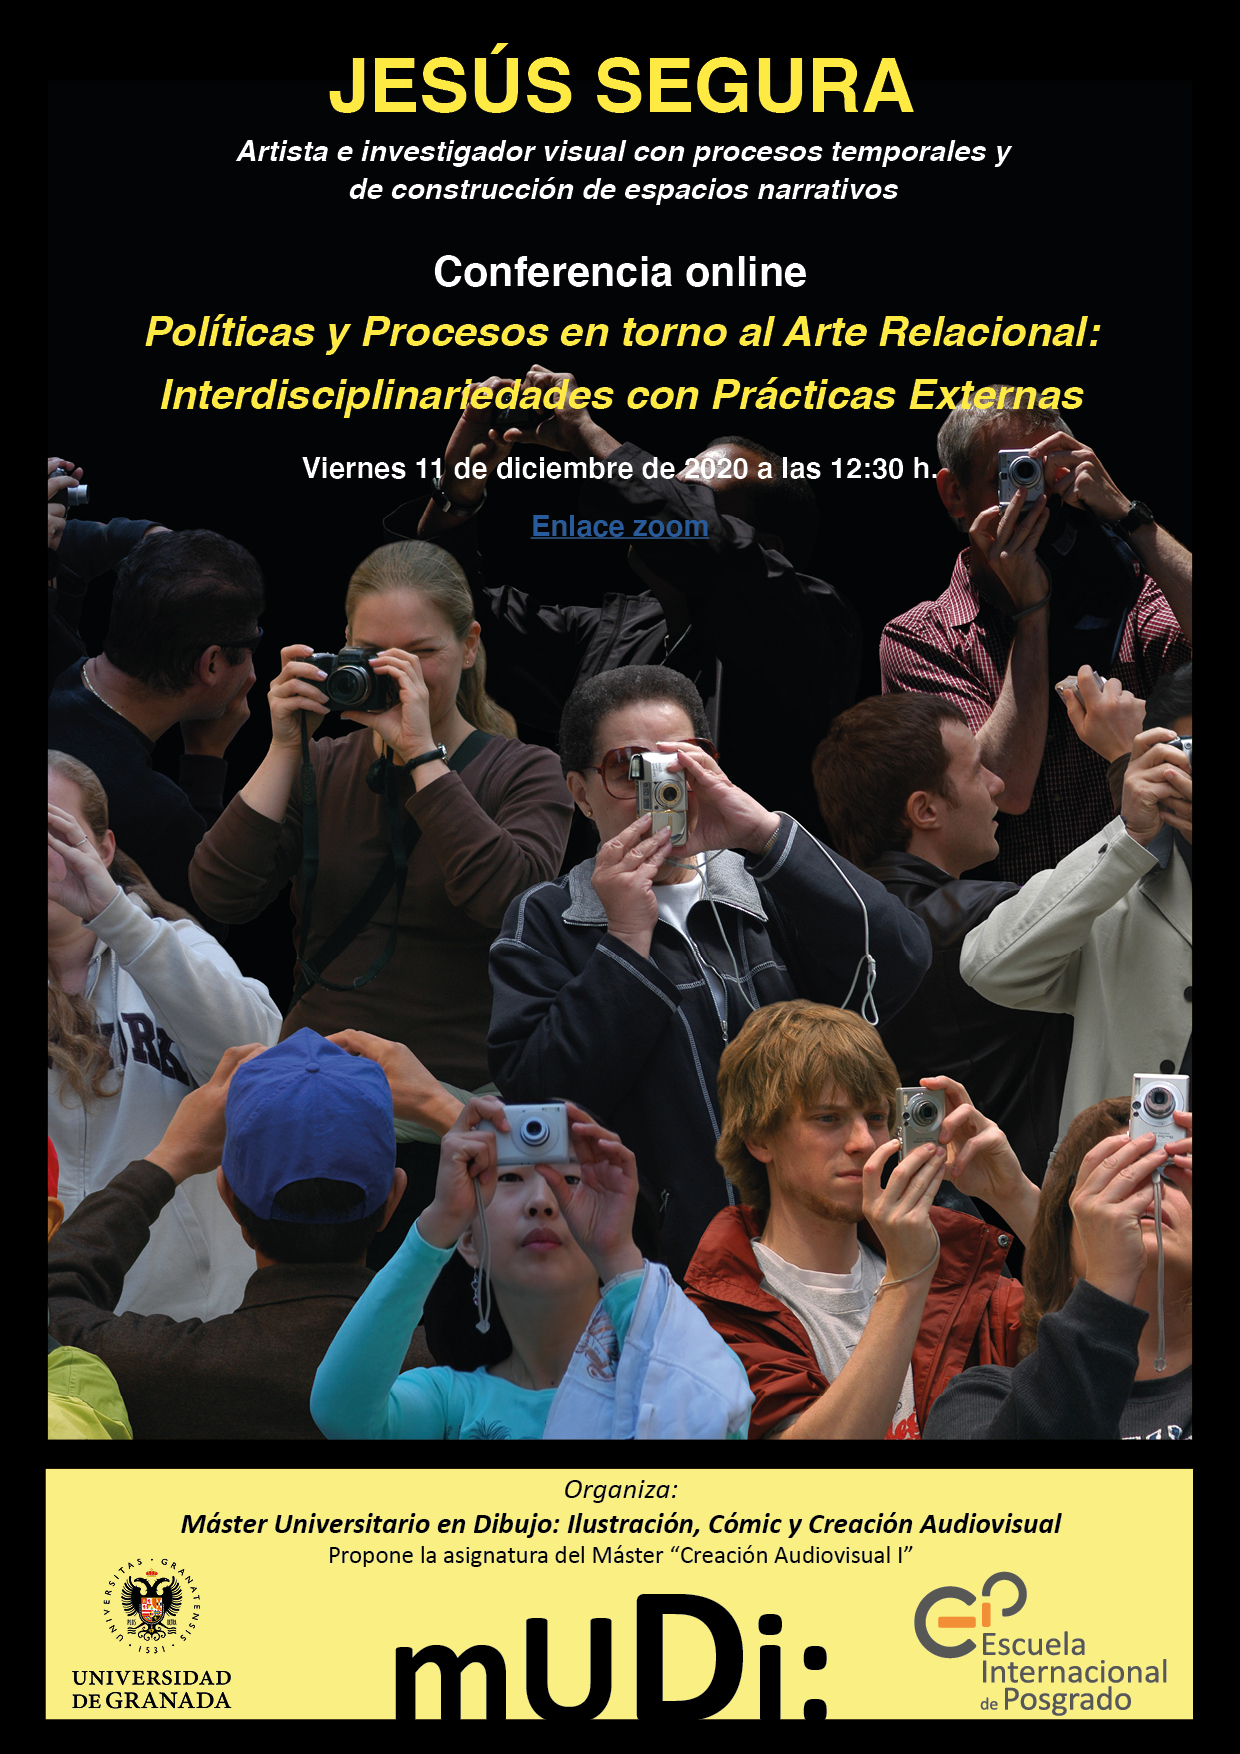 Cartel de la conferencia online "Políticas y procesos en torno al arte relacional: Interdisciplinariedades con prácticas externas"